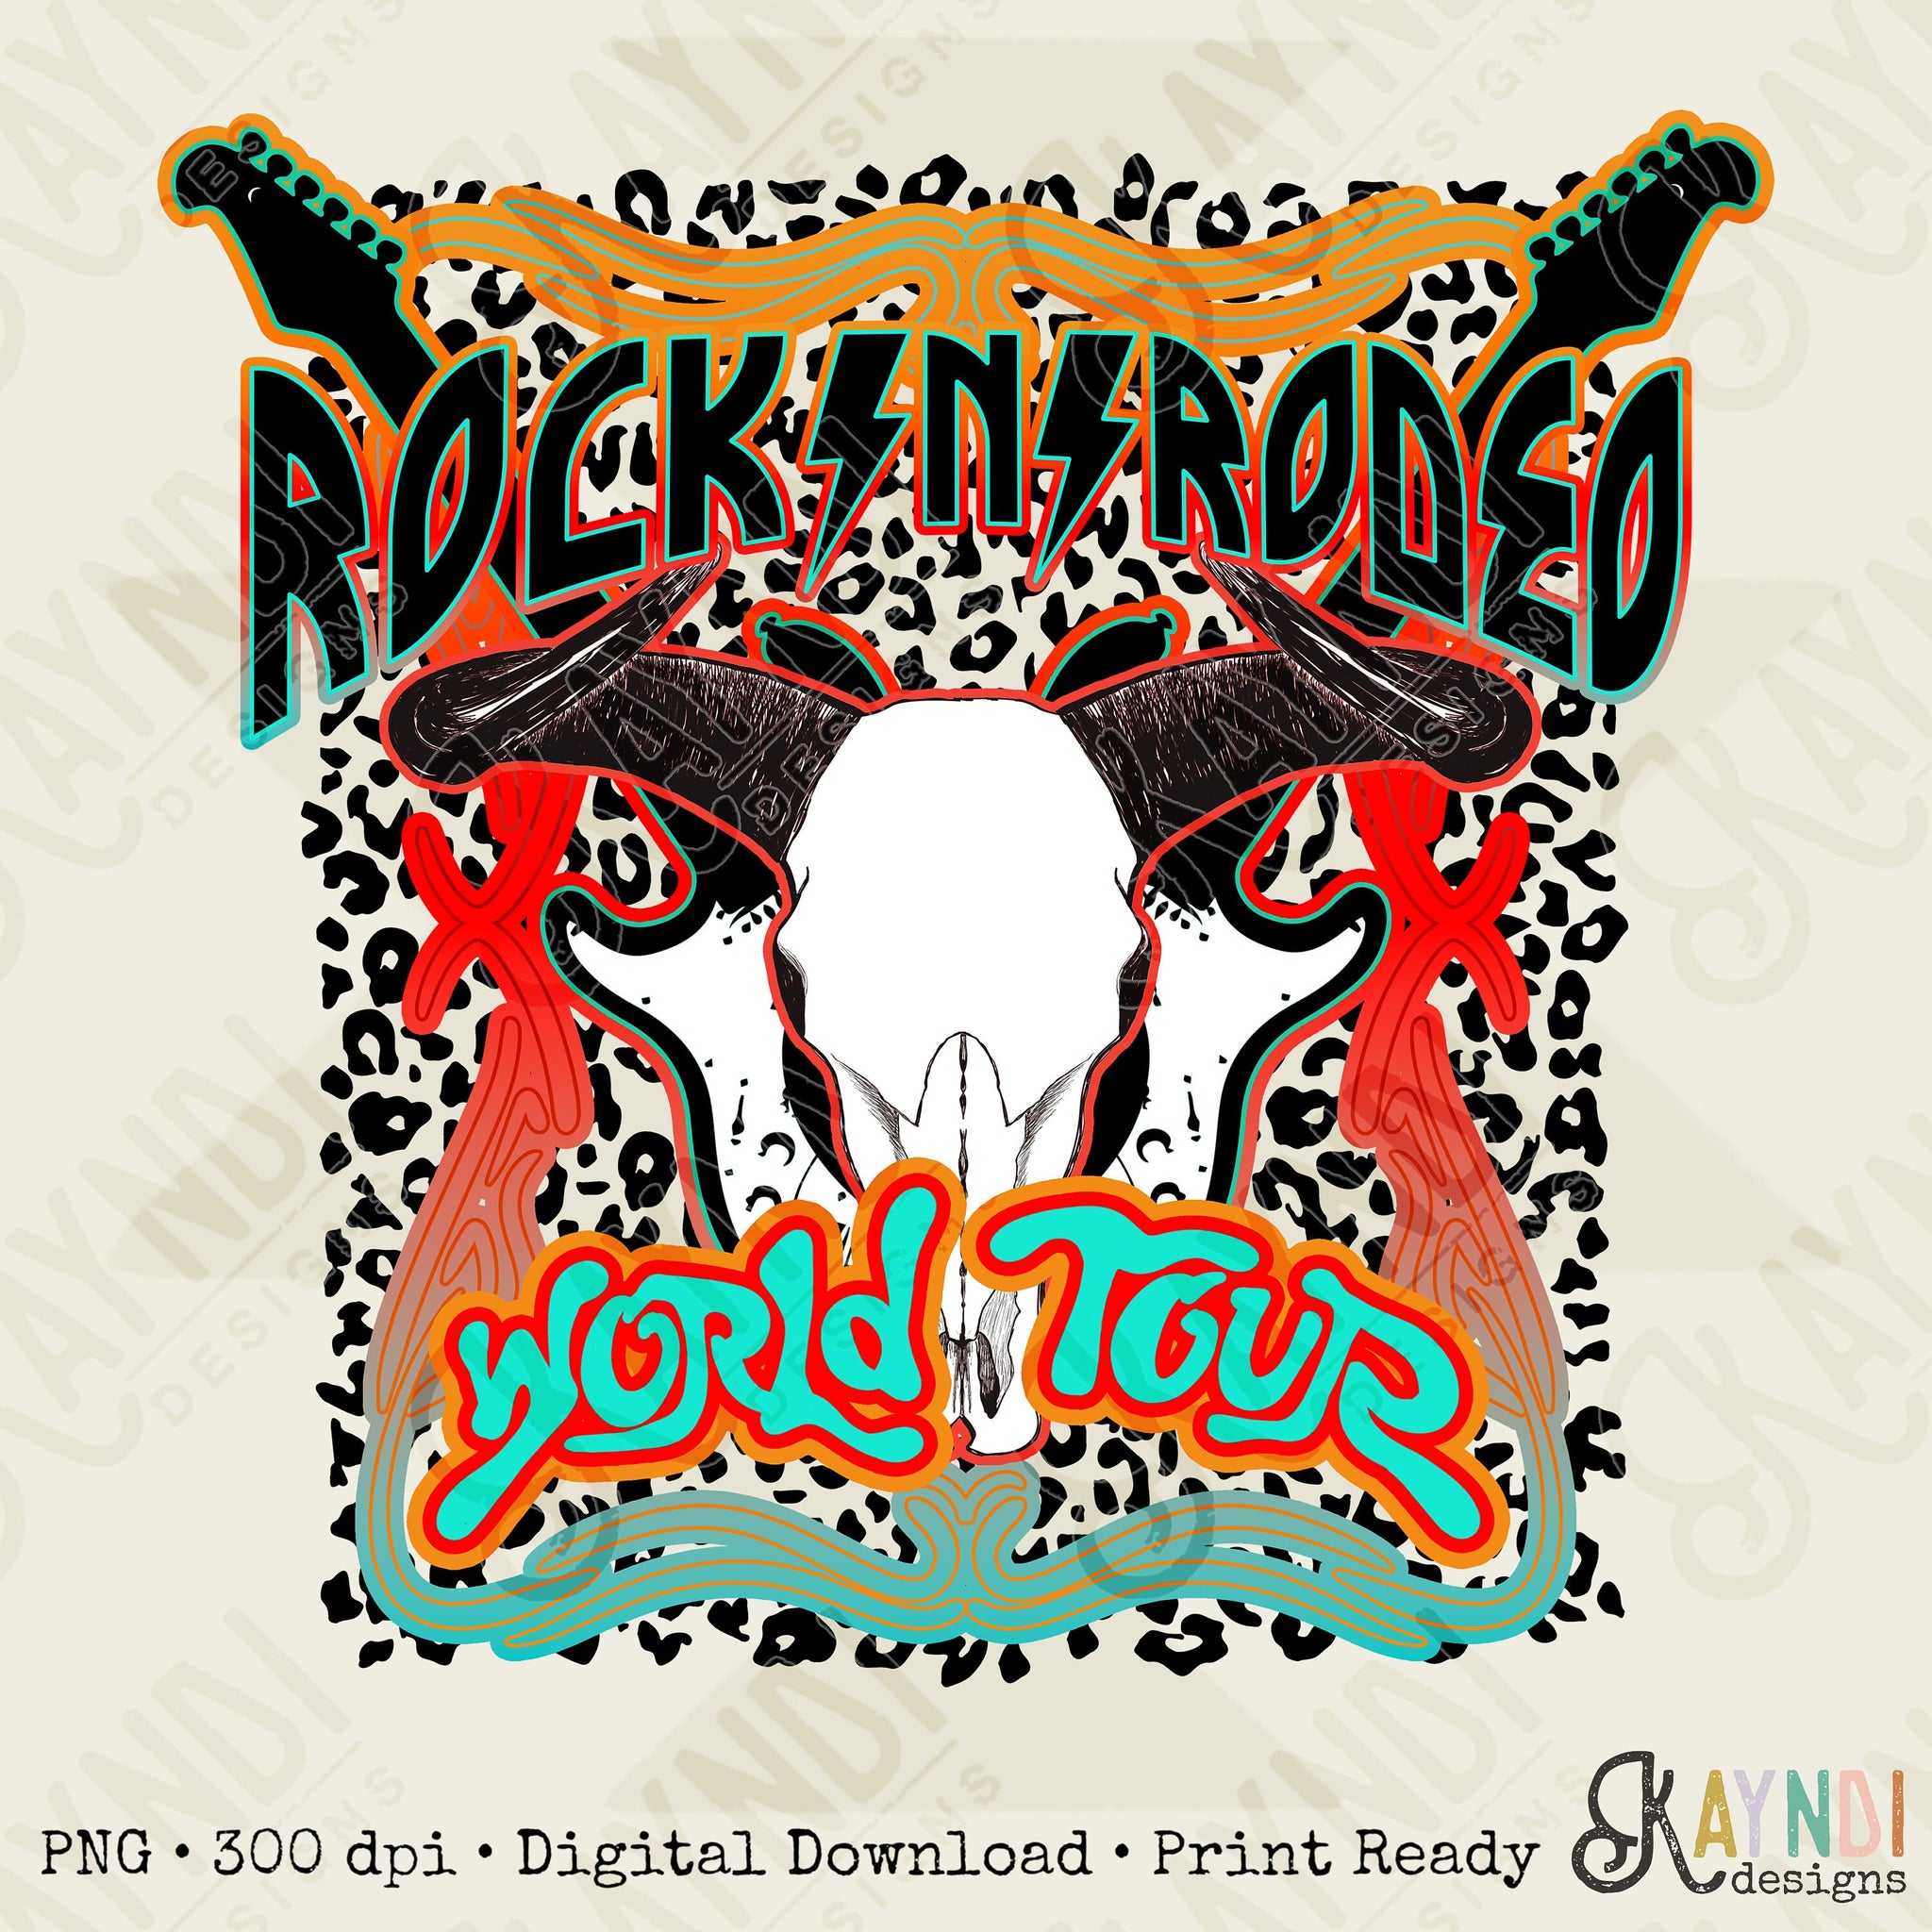 Rock N Rodeo World Tour Sublimation Design PNG Digital Download Printable